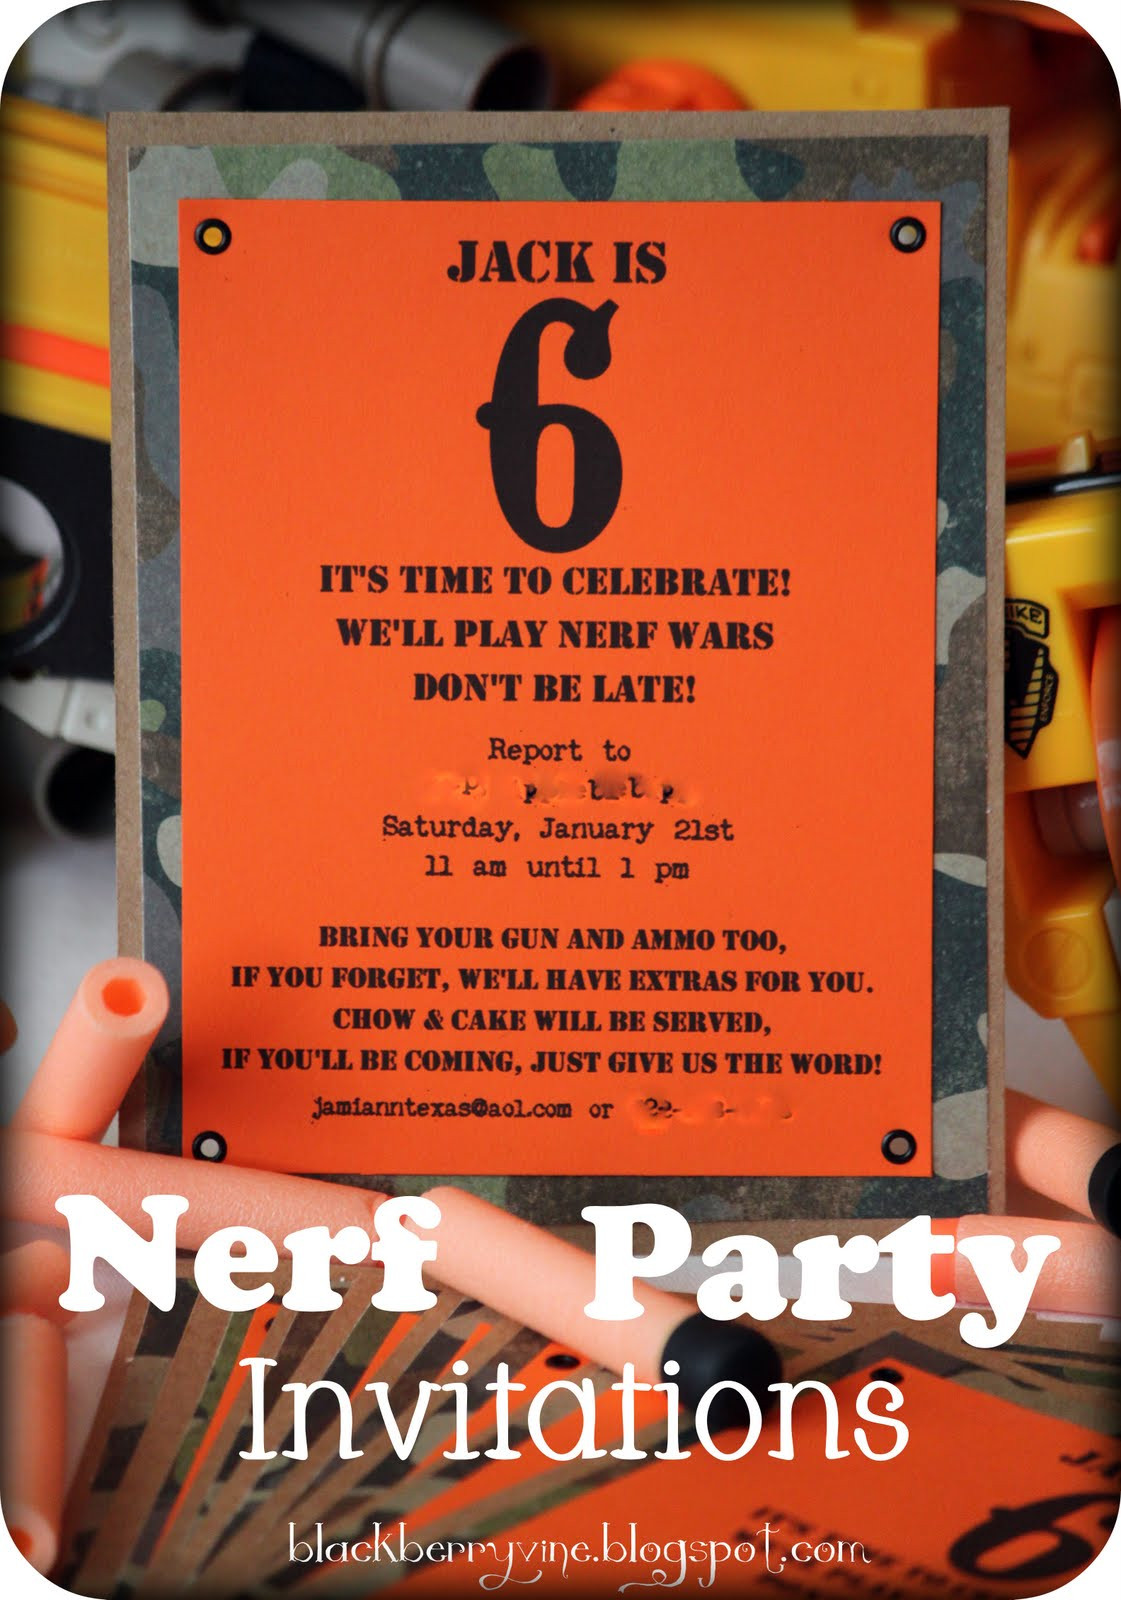 Nerf Birthday Invitations
 The Blackberry Vine Nerf Party Invitation